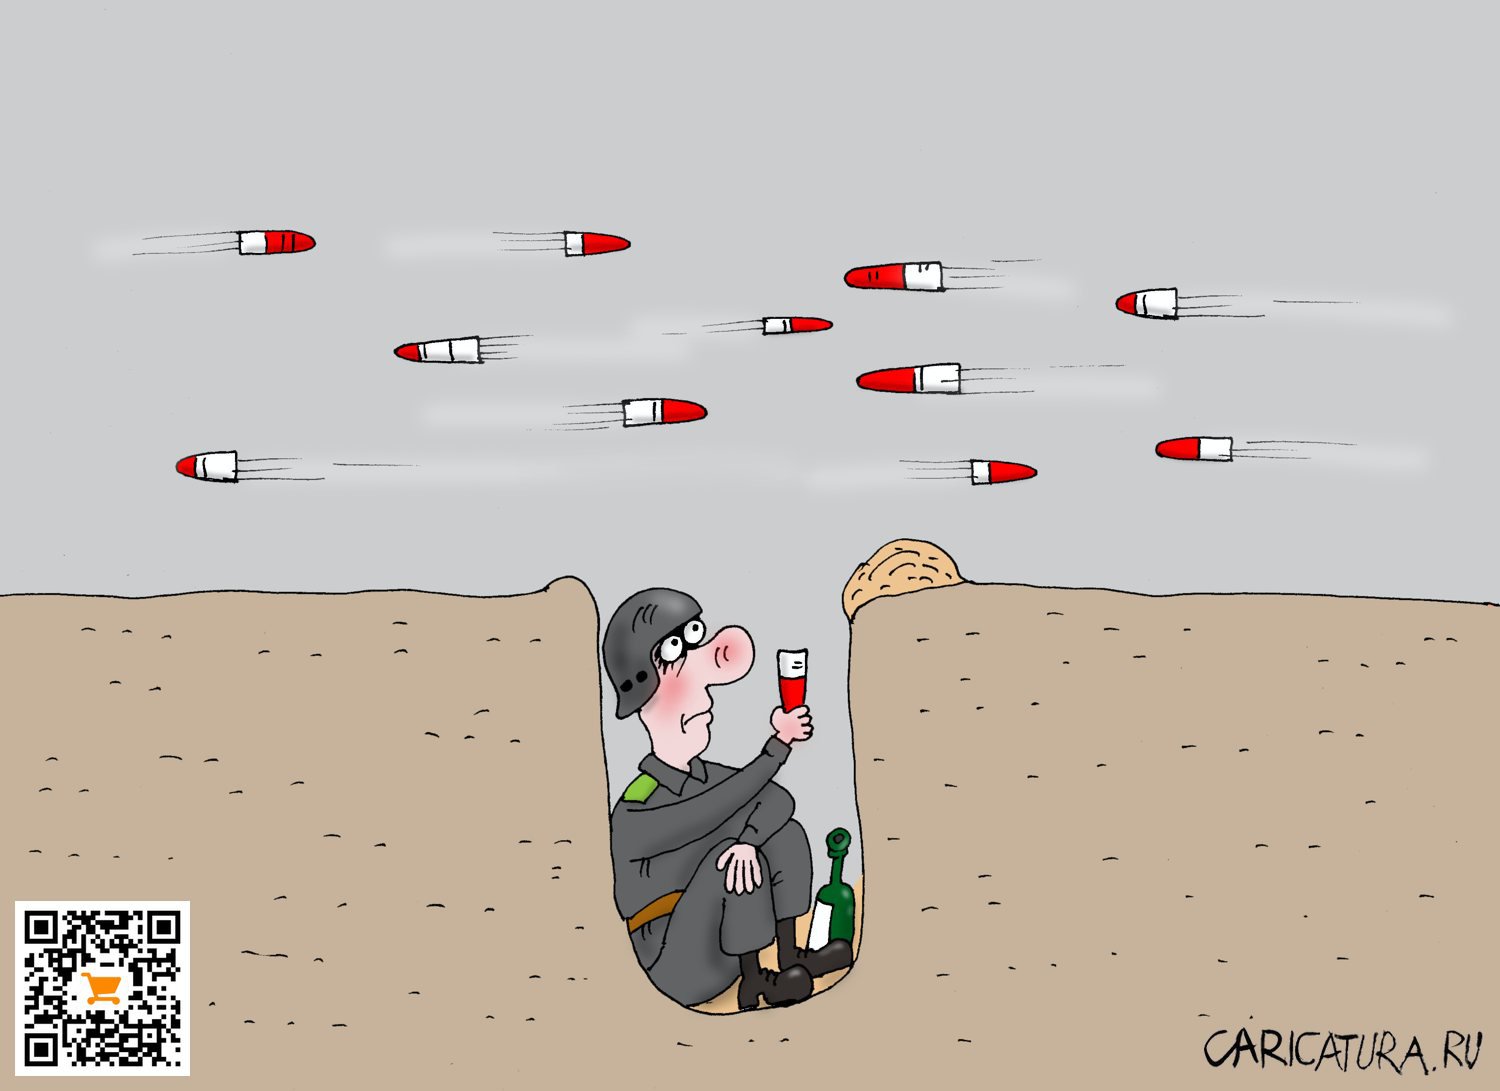 Карикатура "За мир!", Валерий Тарасенко